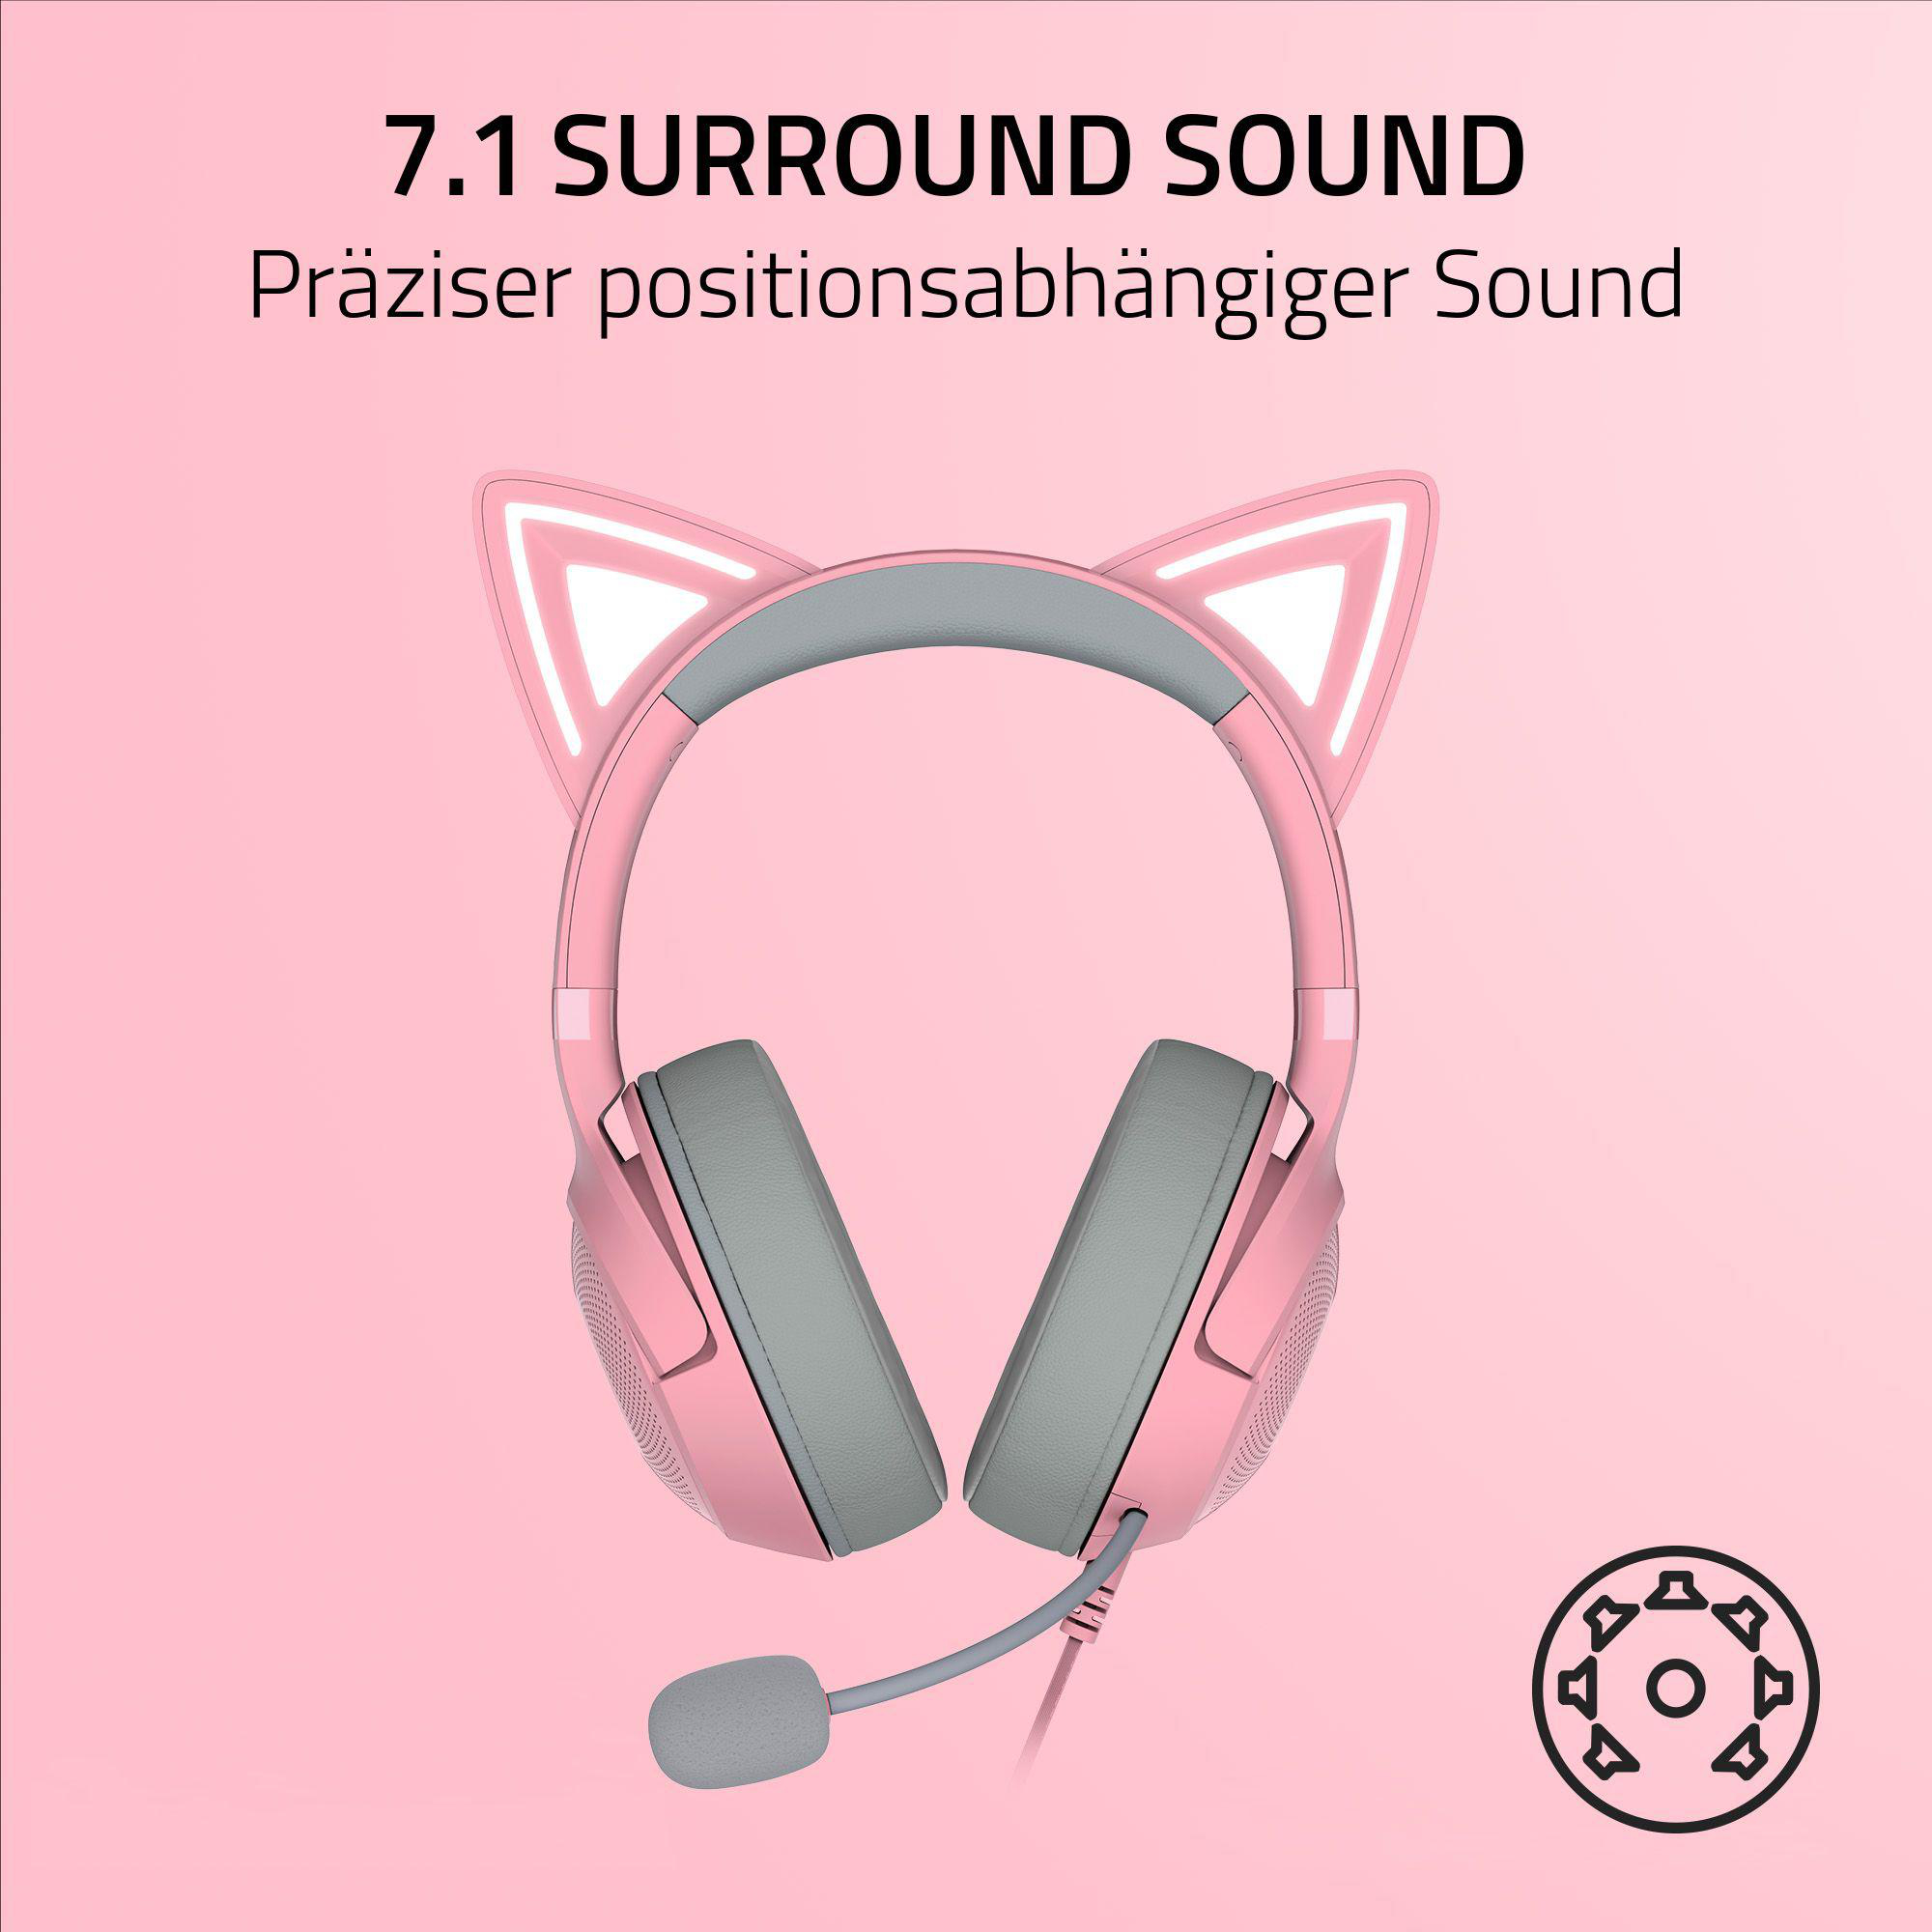 Kraken Quartz RAZER Gaming Kitty Over-ear Headset V2,